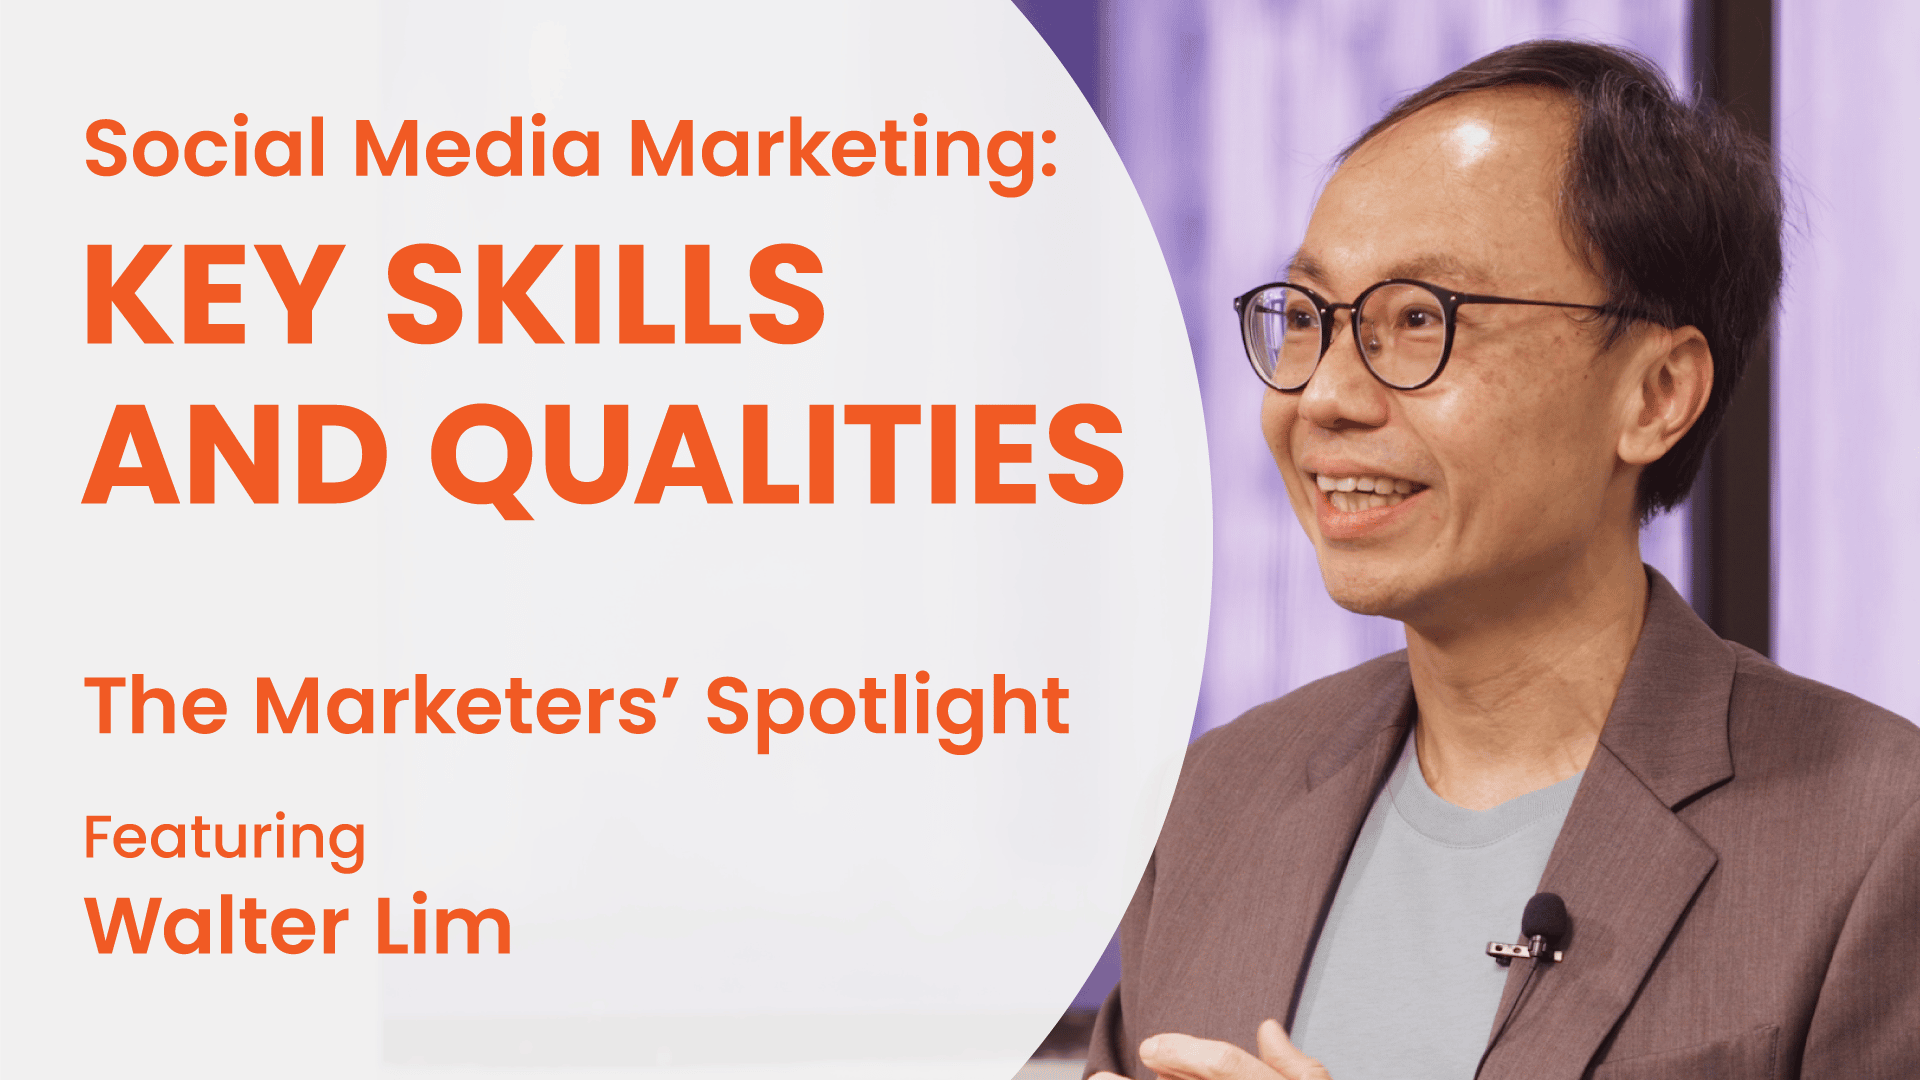 The Marketer's Spotlight - Walter Lim